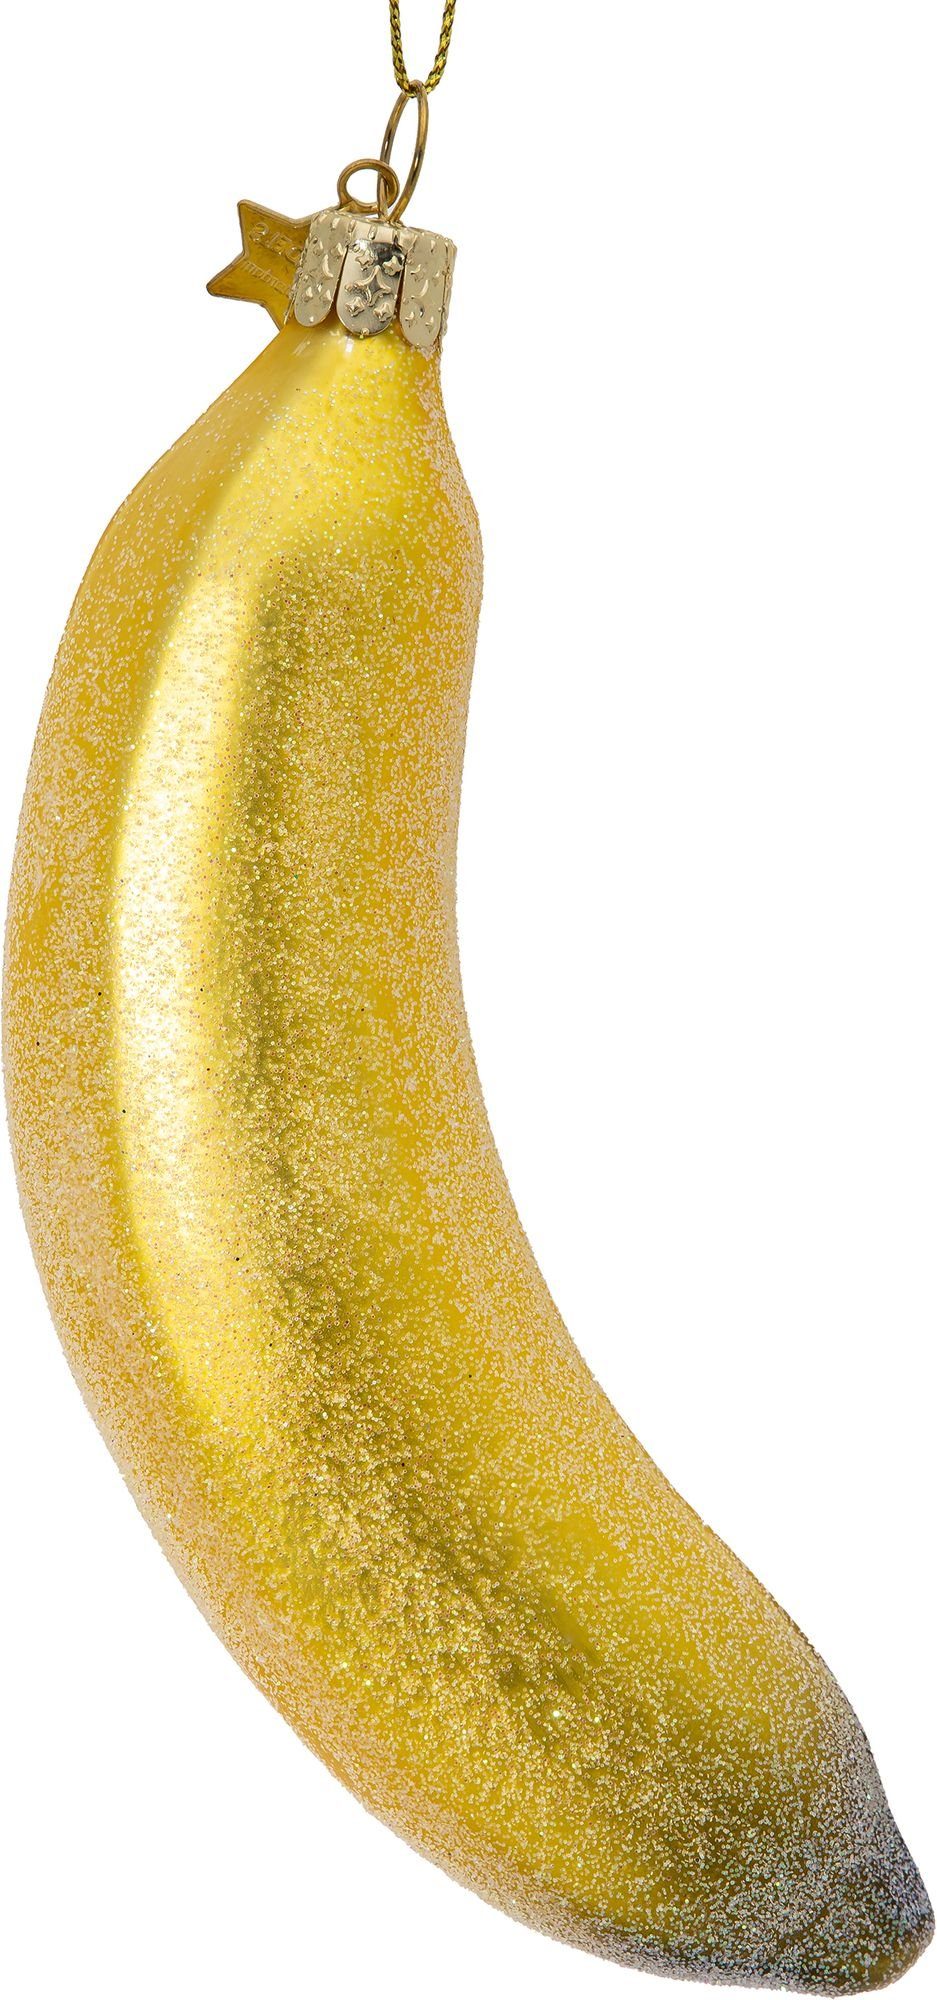 Figur Banane Weihnachtsbaum Glas SIKORA BS545 Anhänger Christbaumschmuck